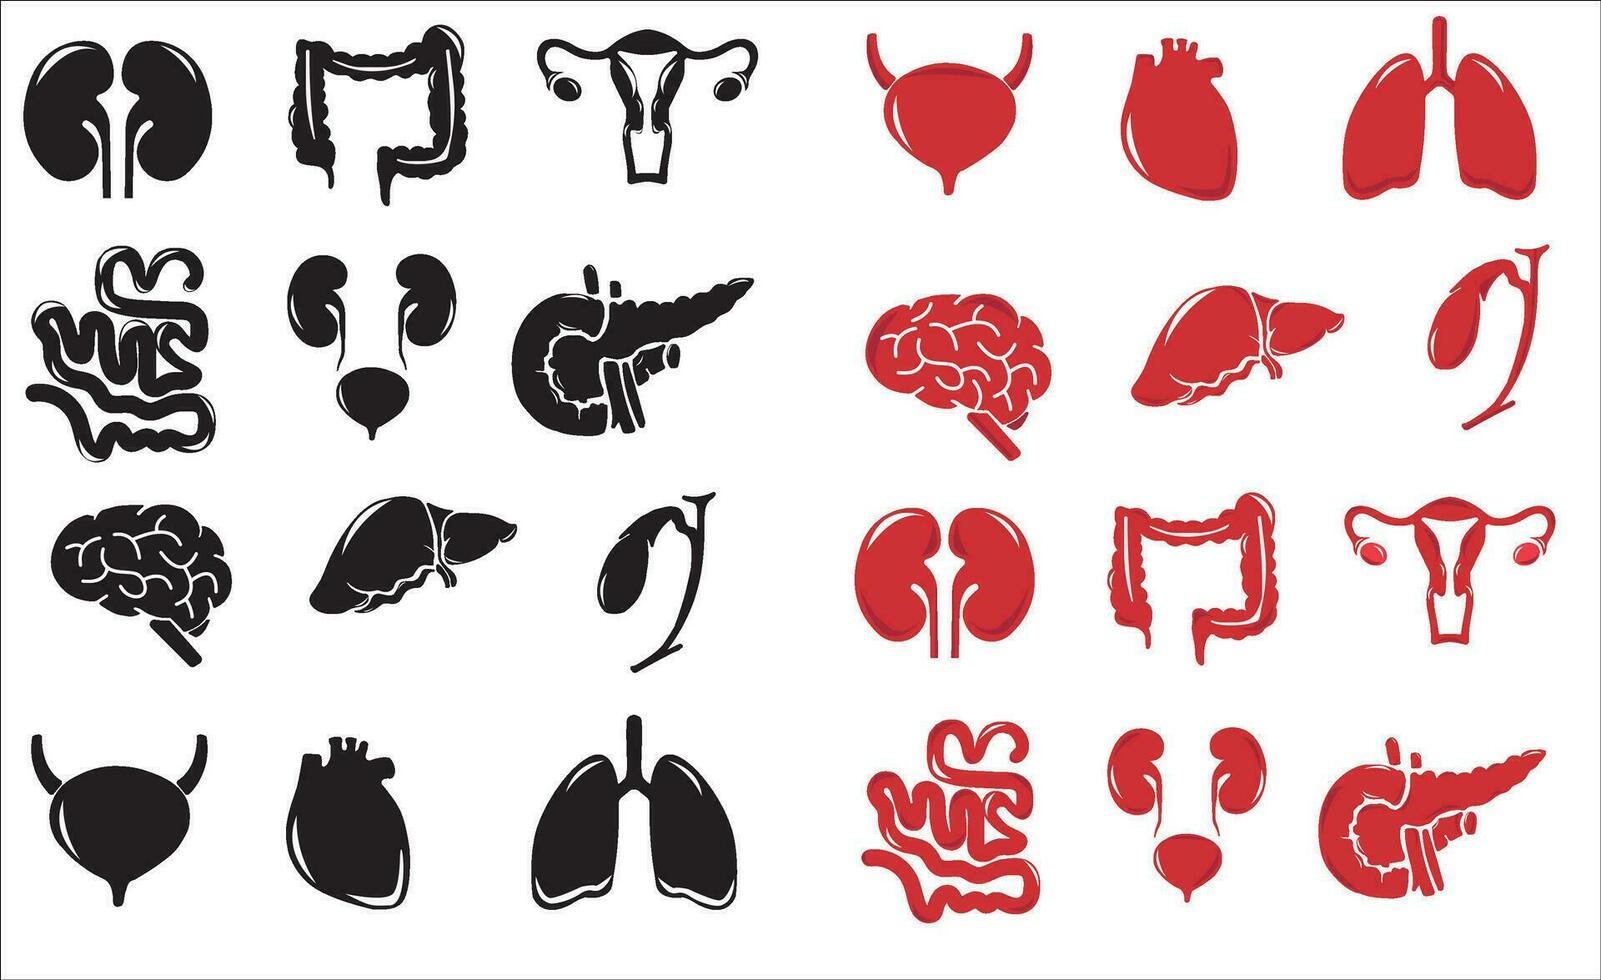 Humain interne organes. vecteur esquisser isolé illustration. main tiré griffonnage anatomie symboles ensemble.